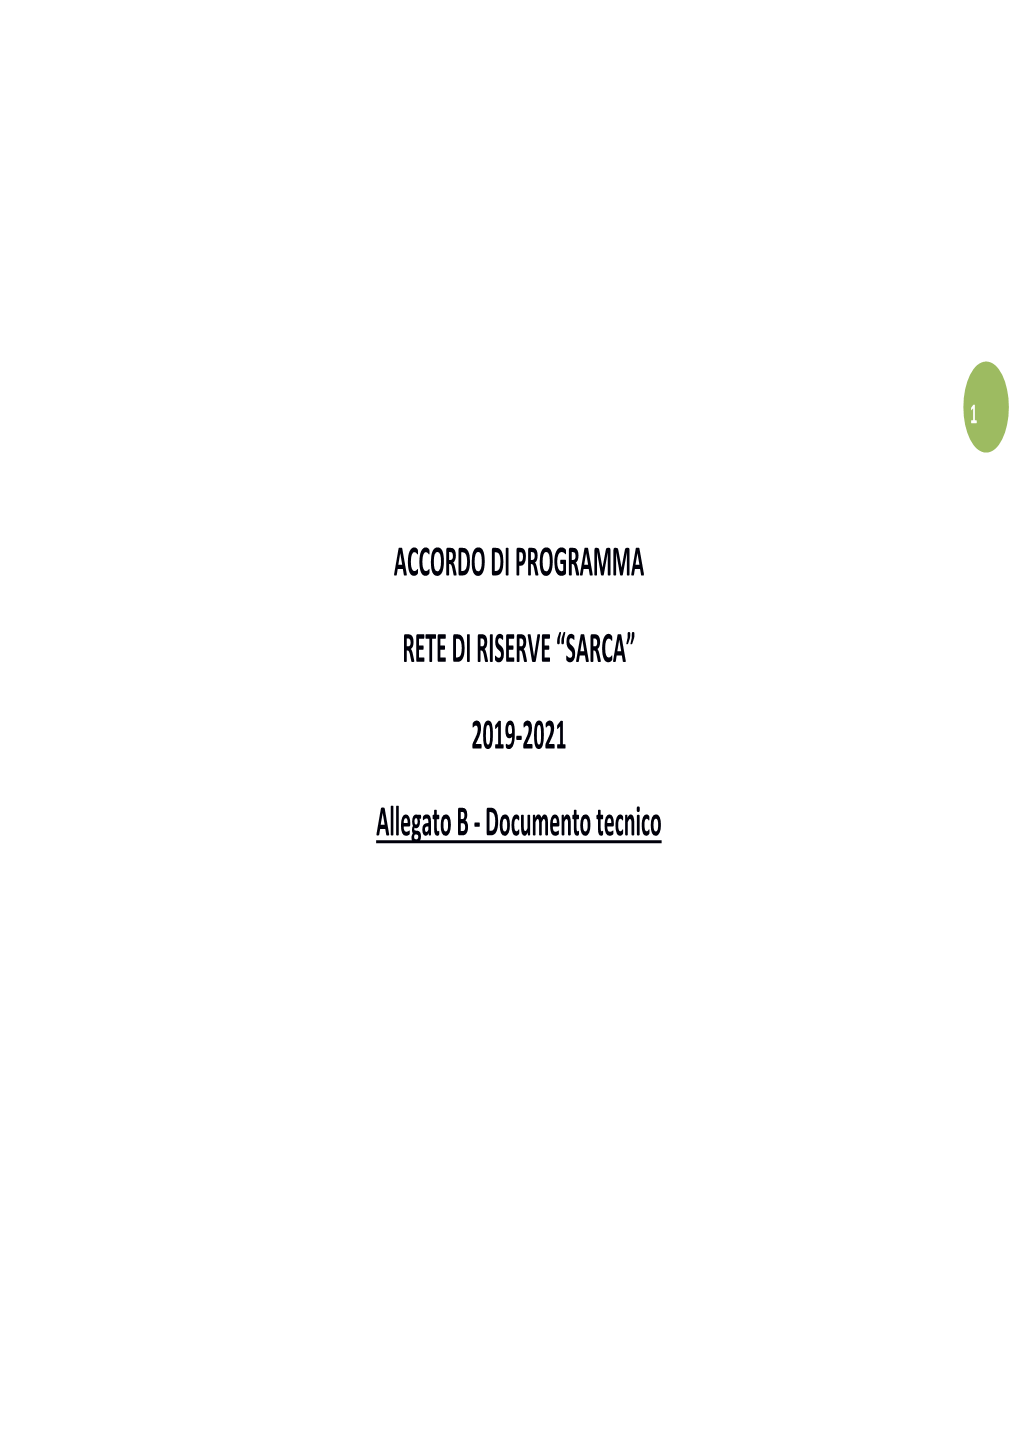 ACCORDO DI PROGRAMMA RETE DI RISERVE “SARCA” 2019-2021 Allegato B - Documento Tecnico